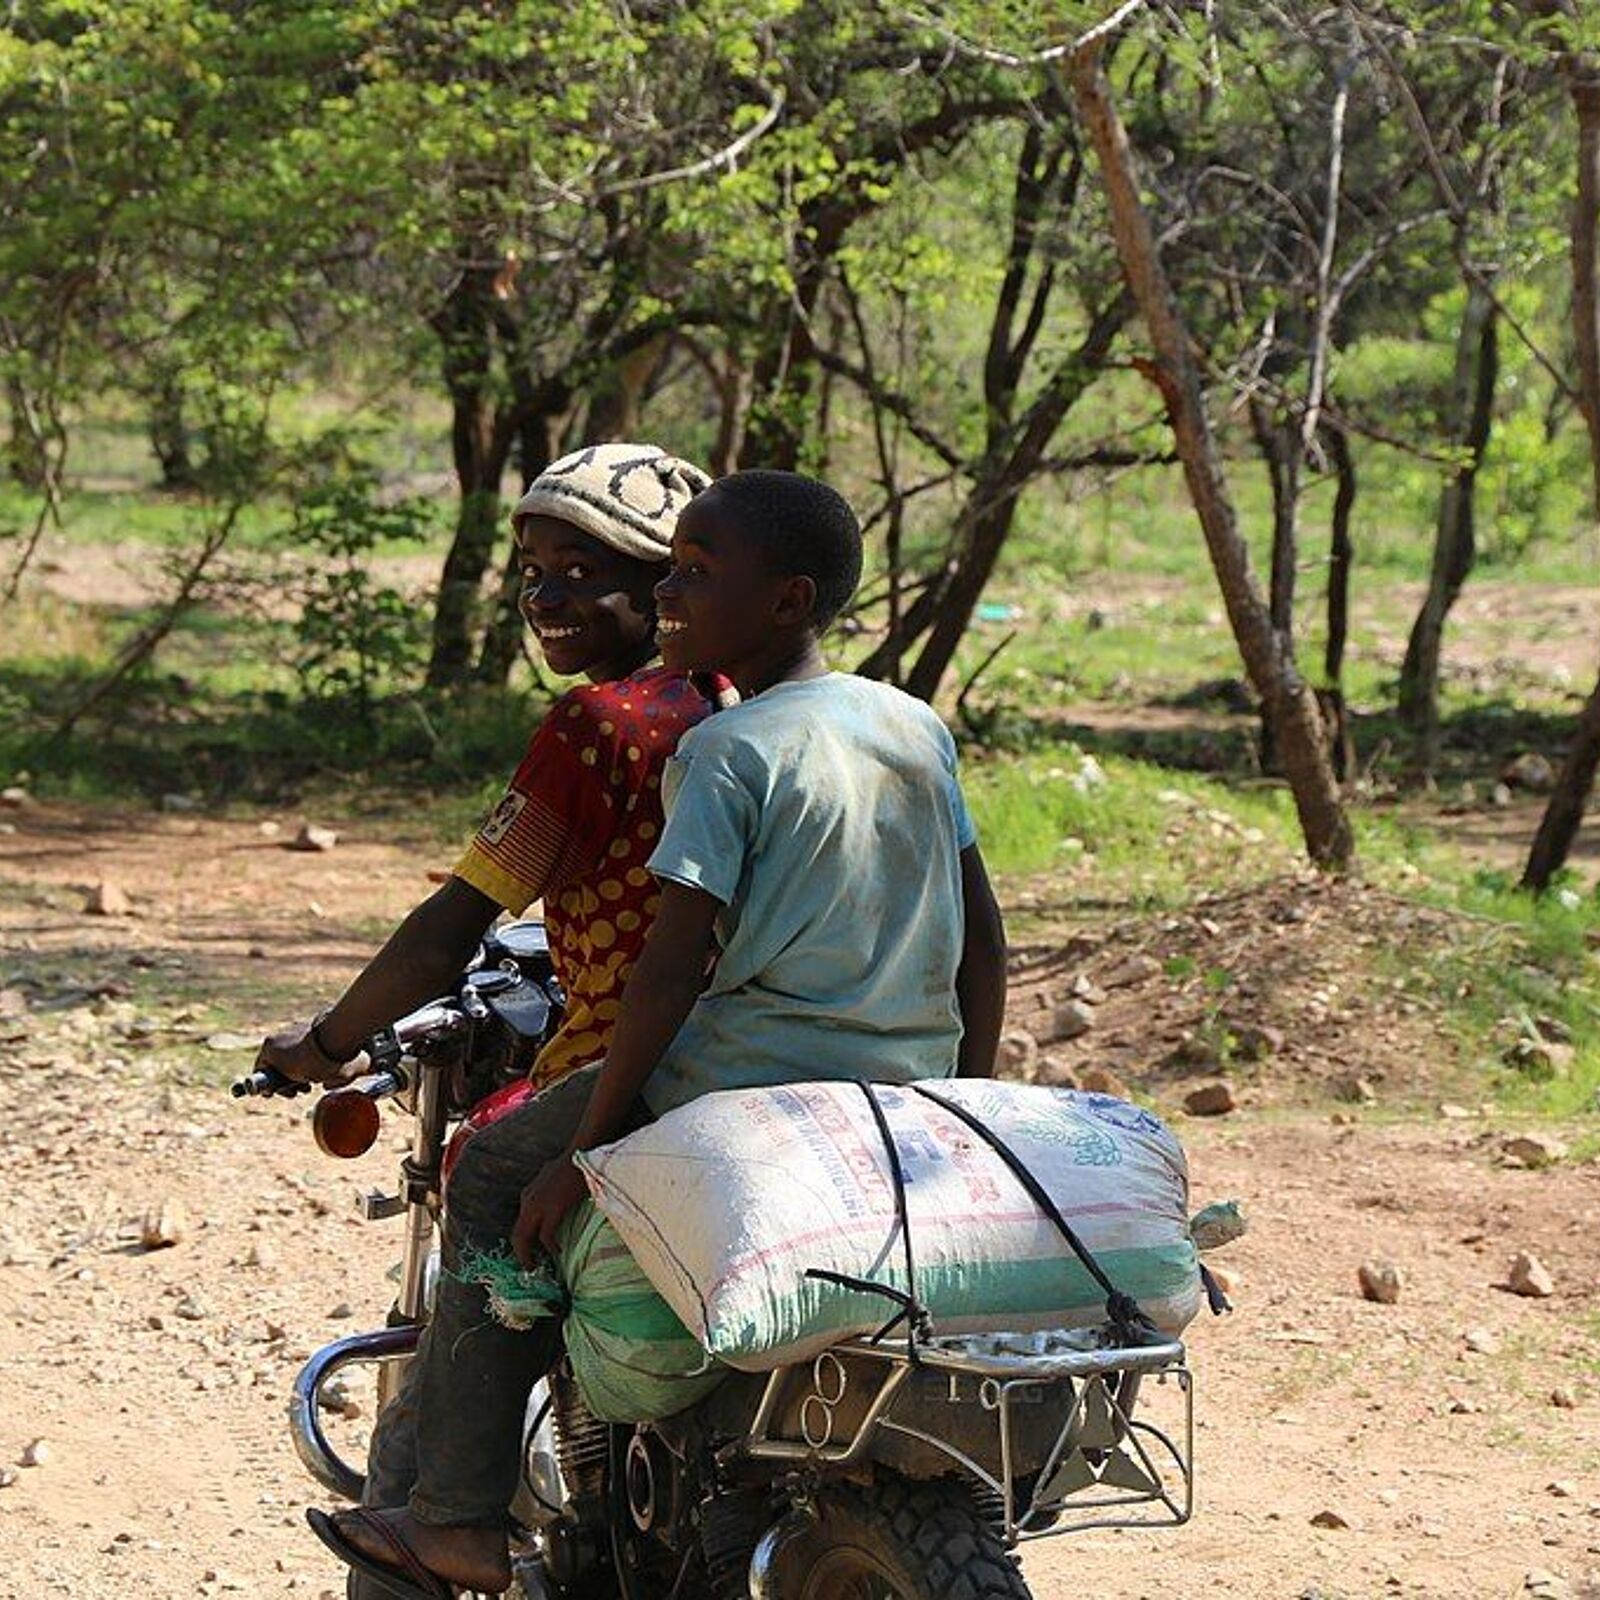 Boys transport minerals in Tansania. Image by Shahir Chundra 2015.